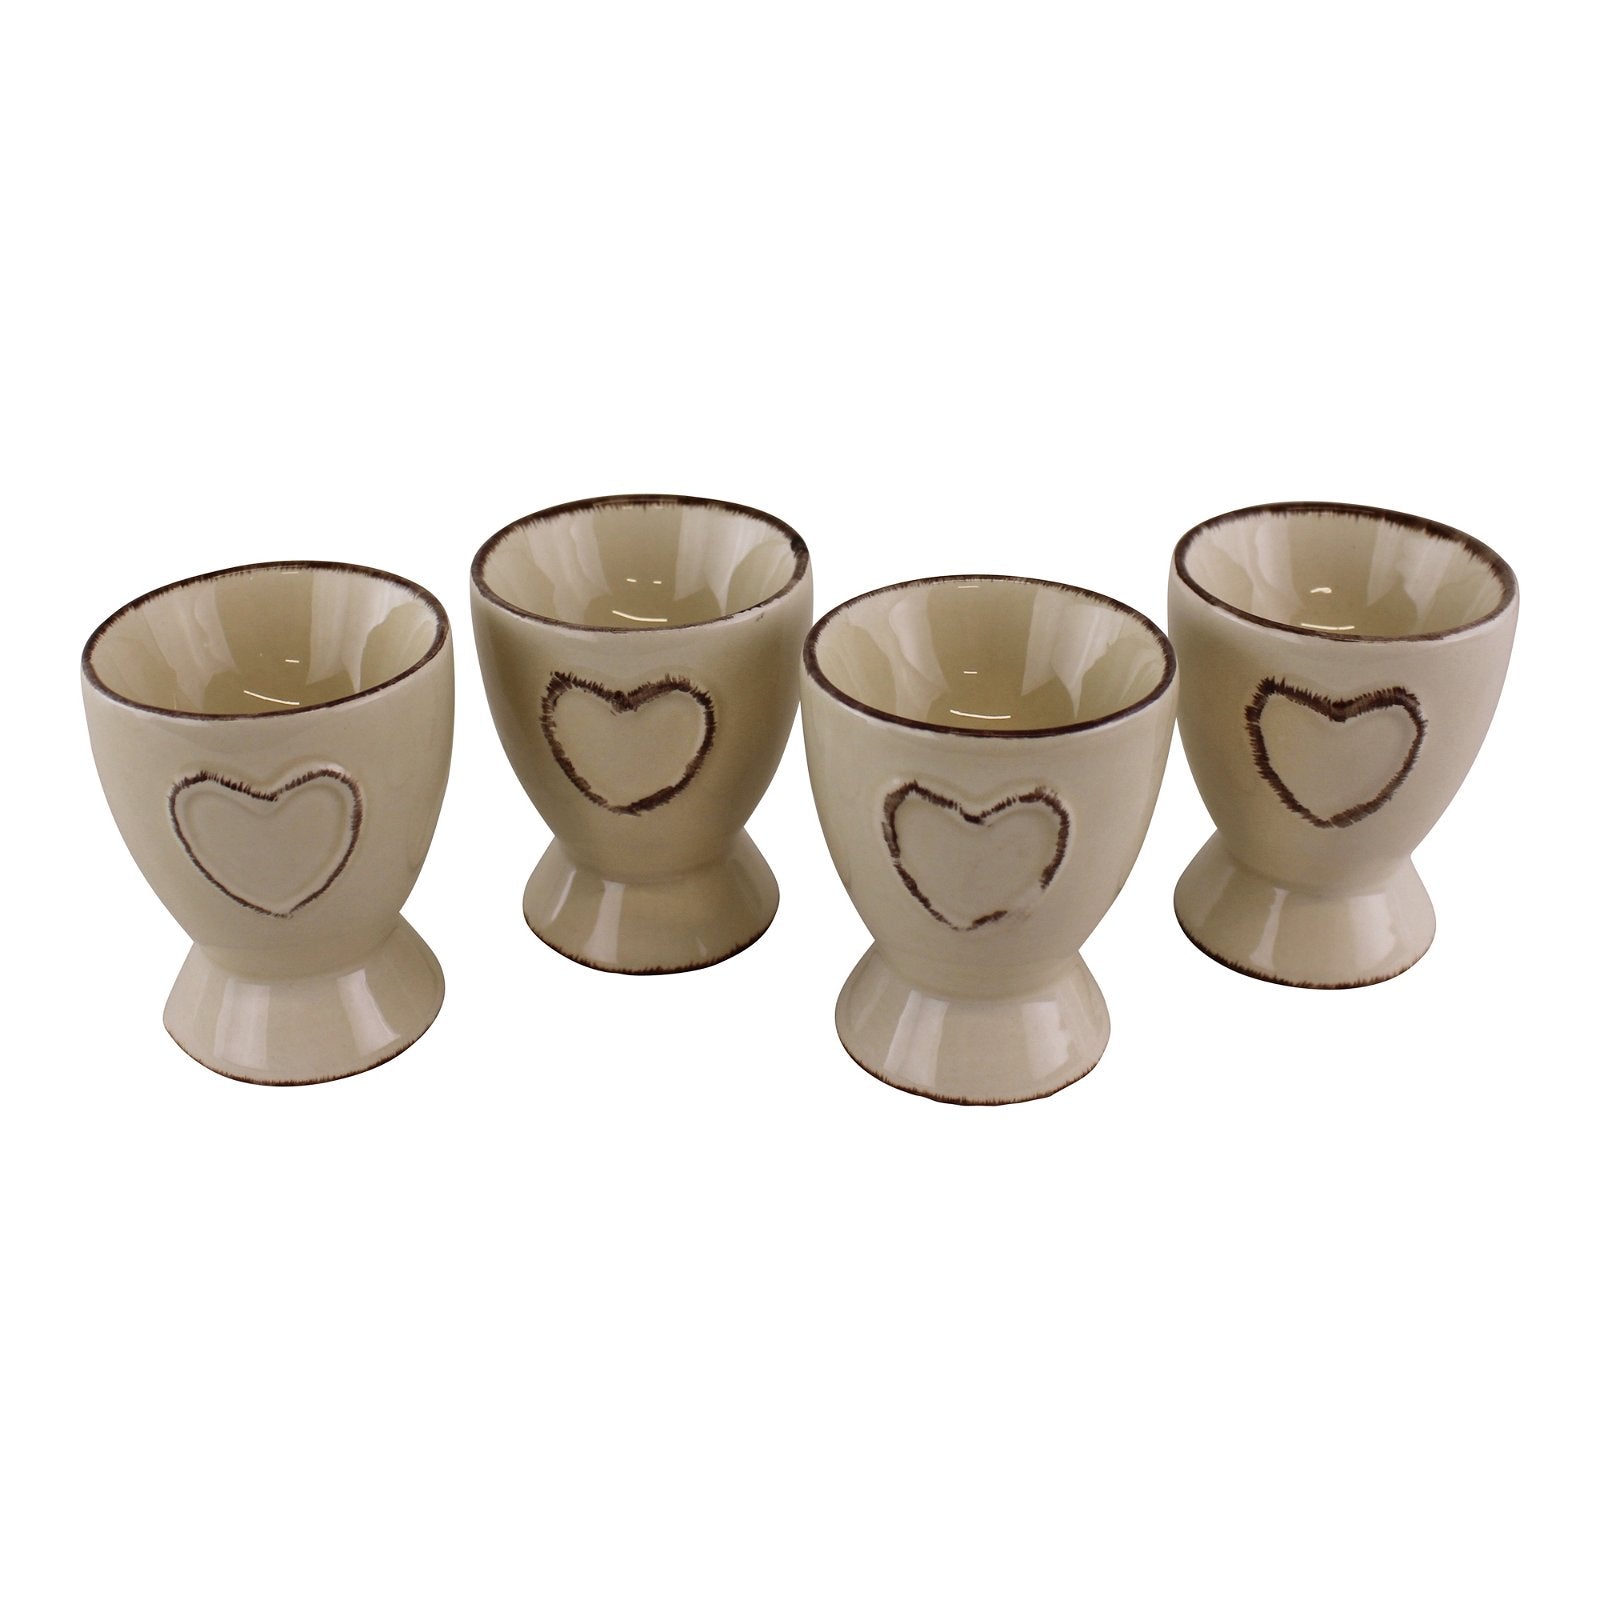 Set Of 4 Heart Range Ceramic Egg Cups